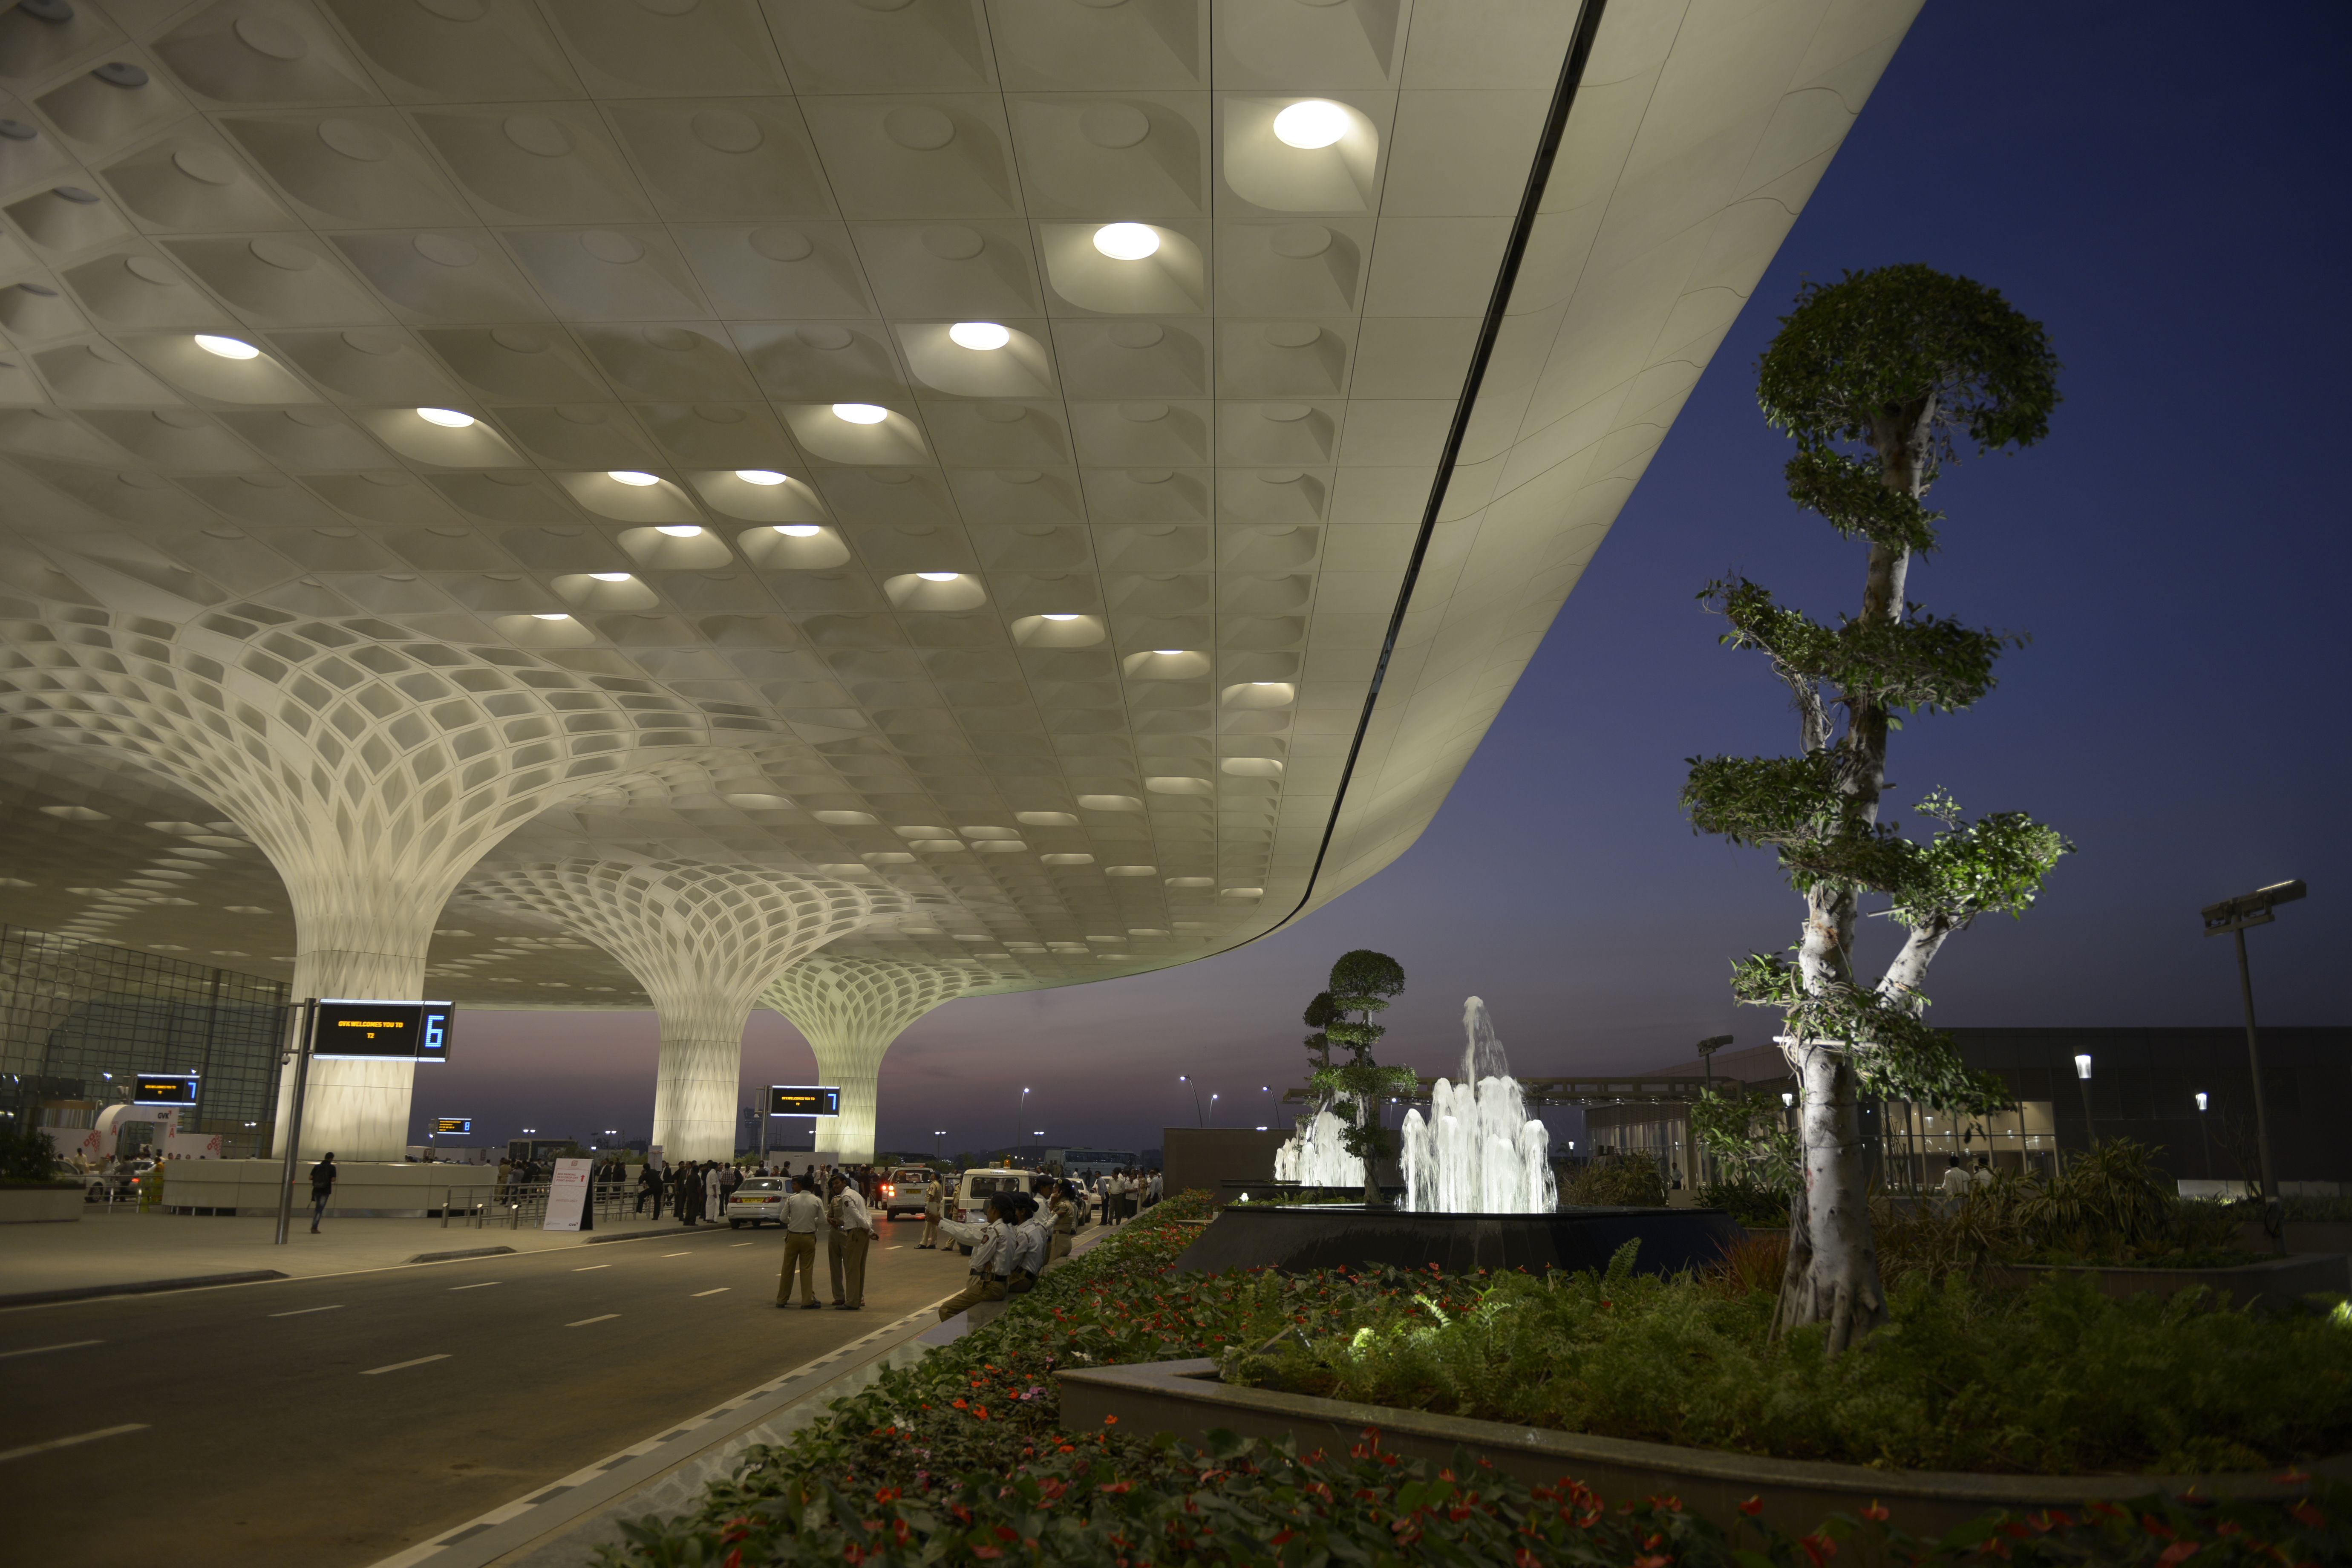 Mumbai Airport terminal 2